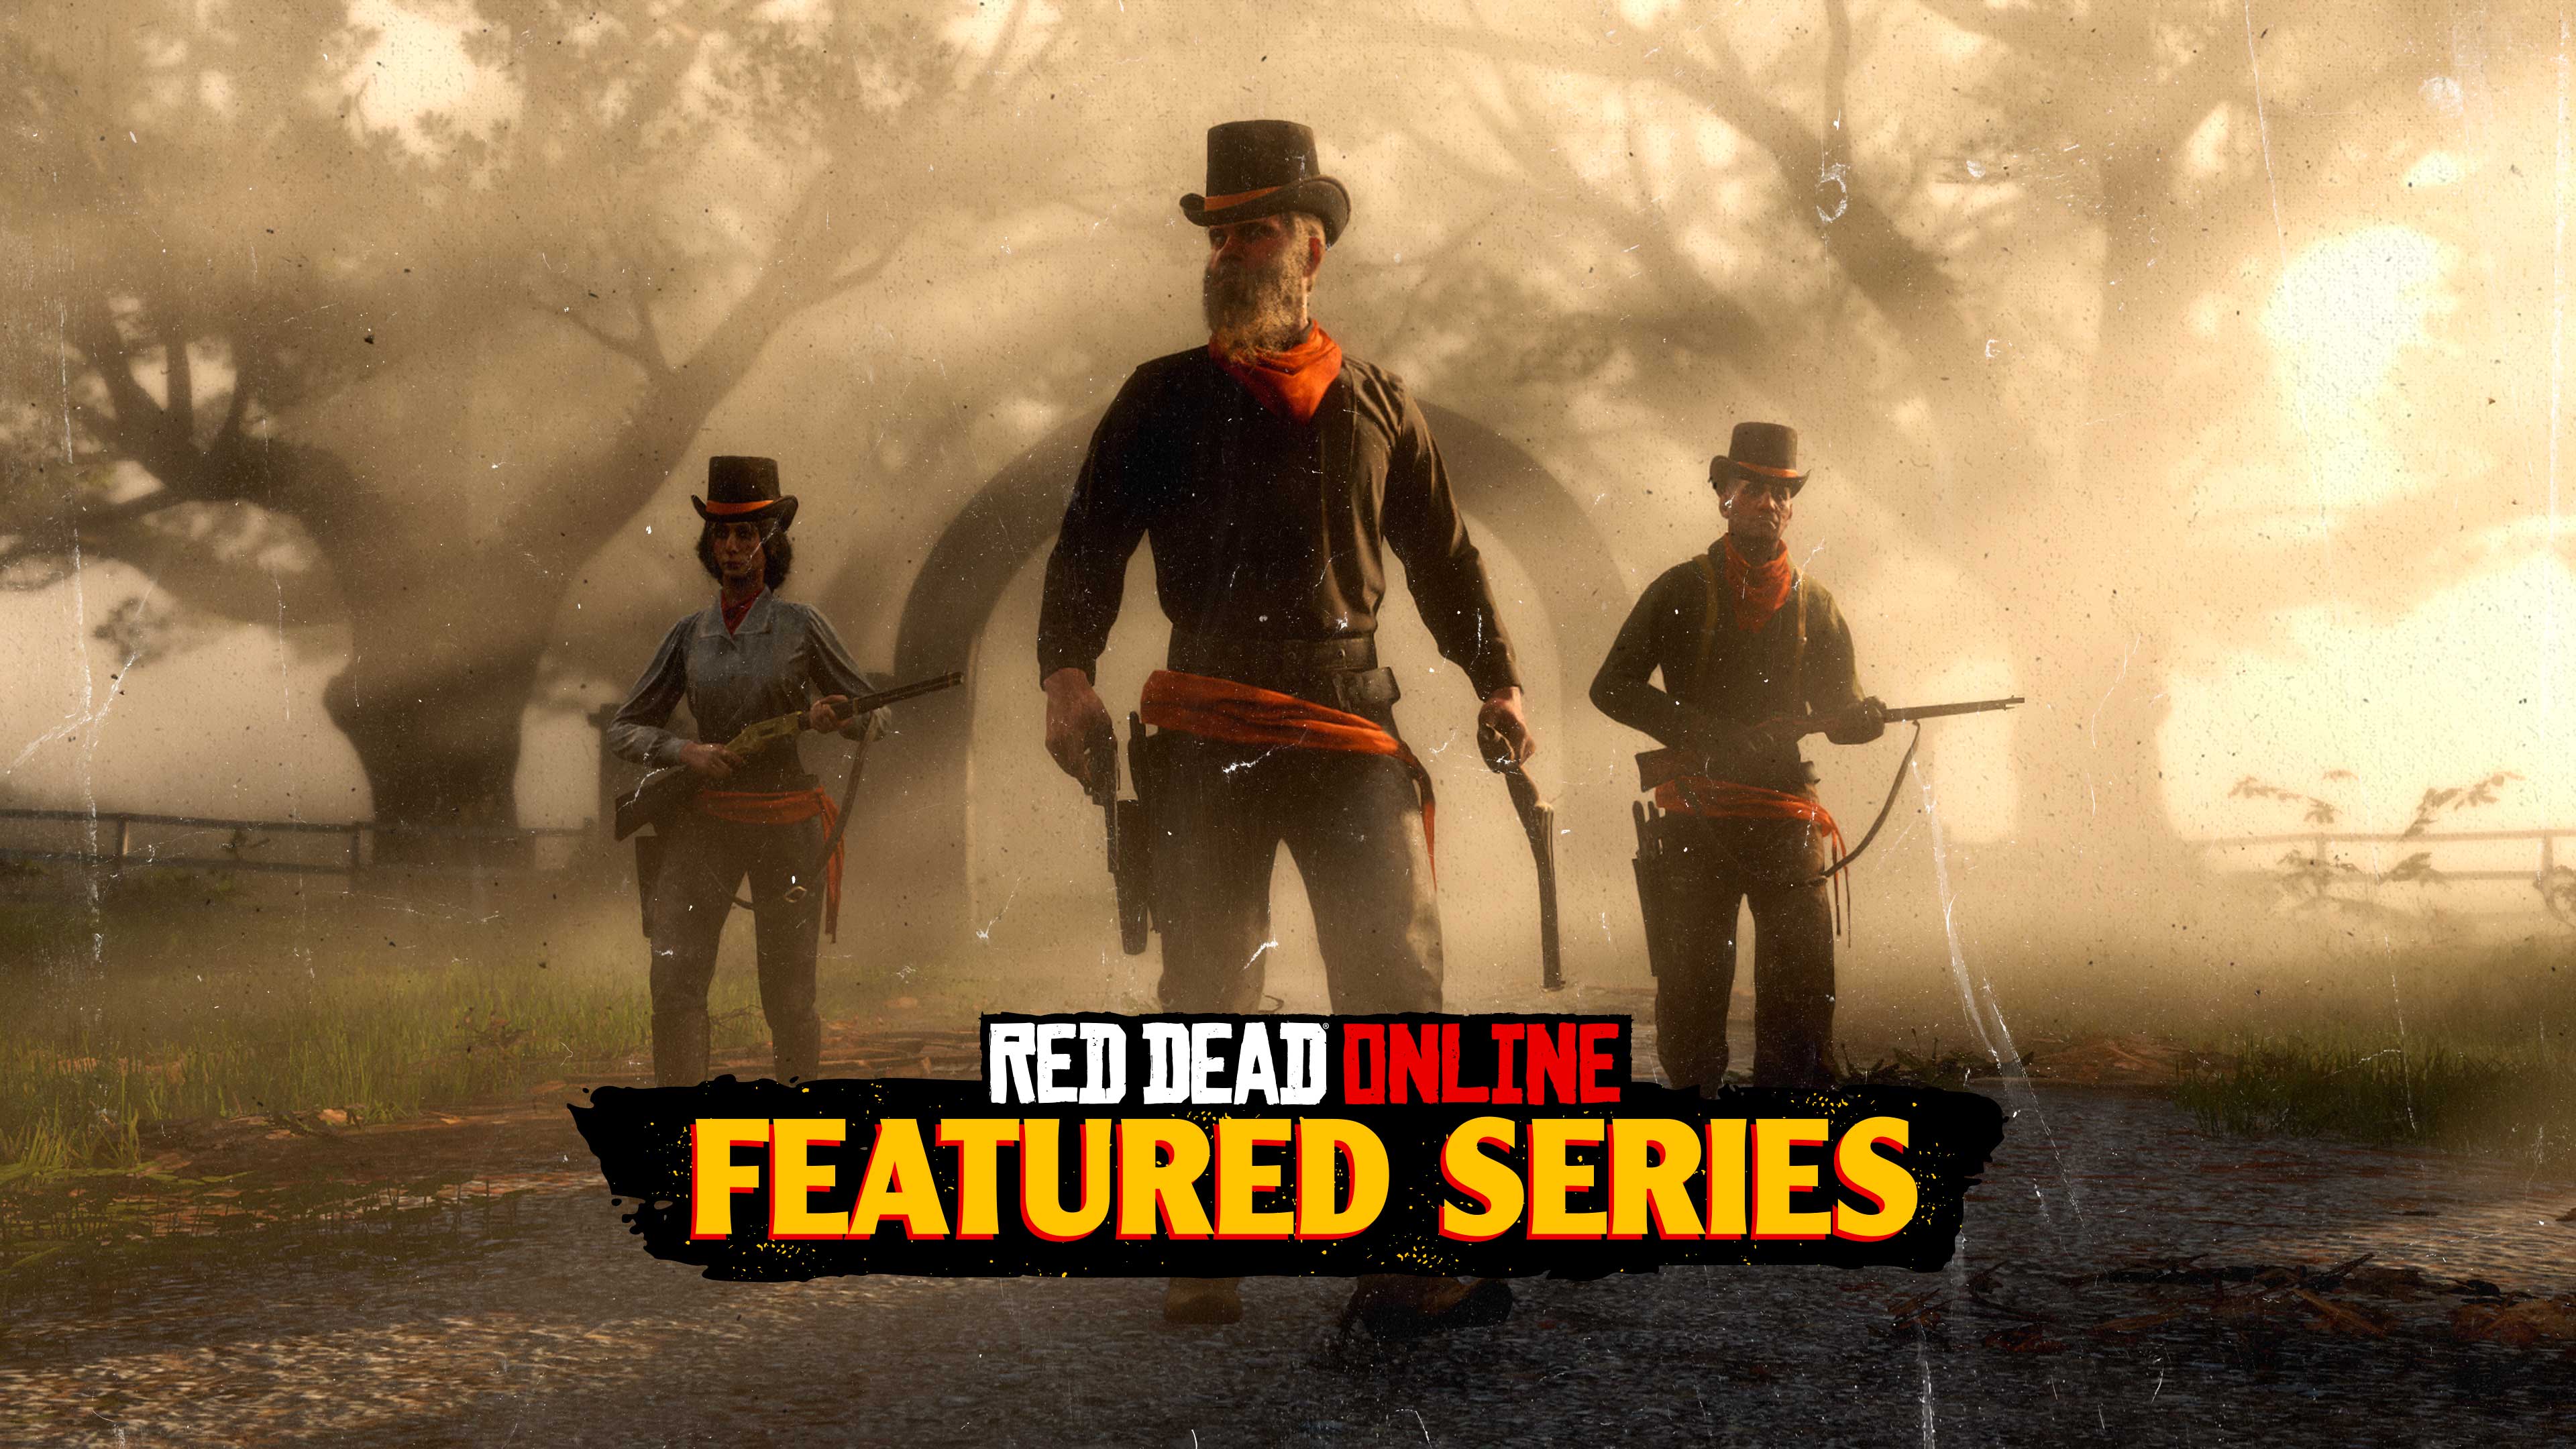 Imagens de Red Dead Online e logotipo da Série em Destaque